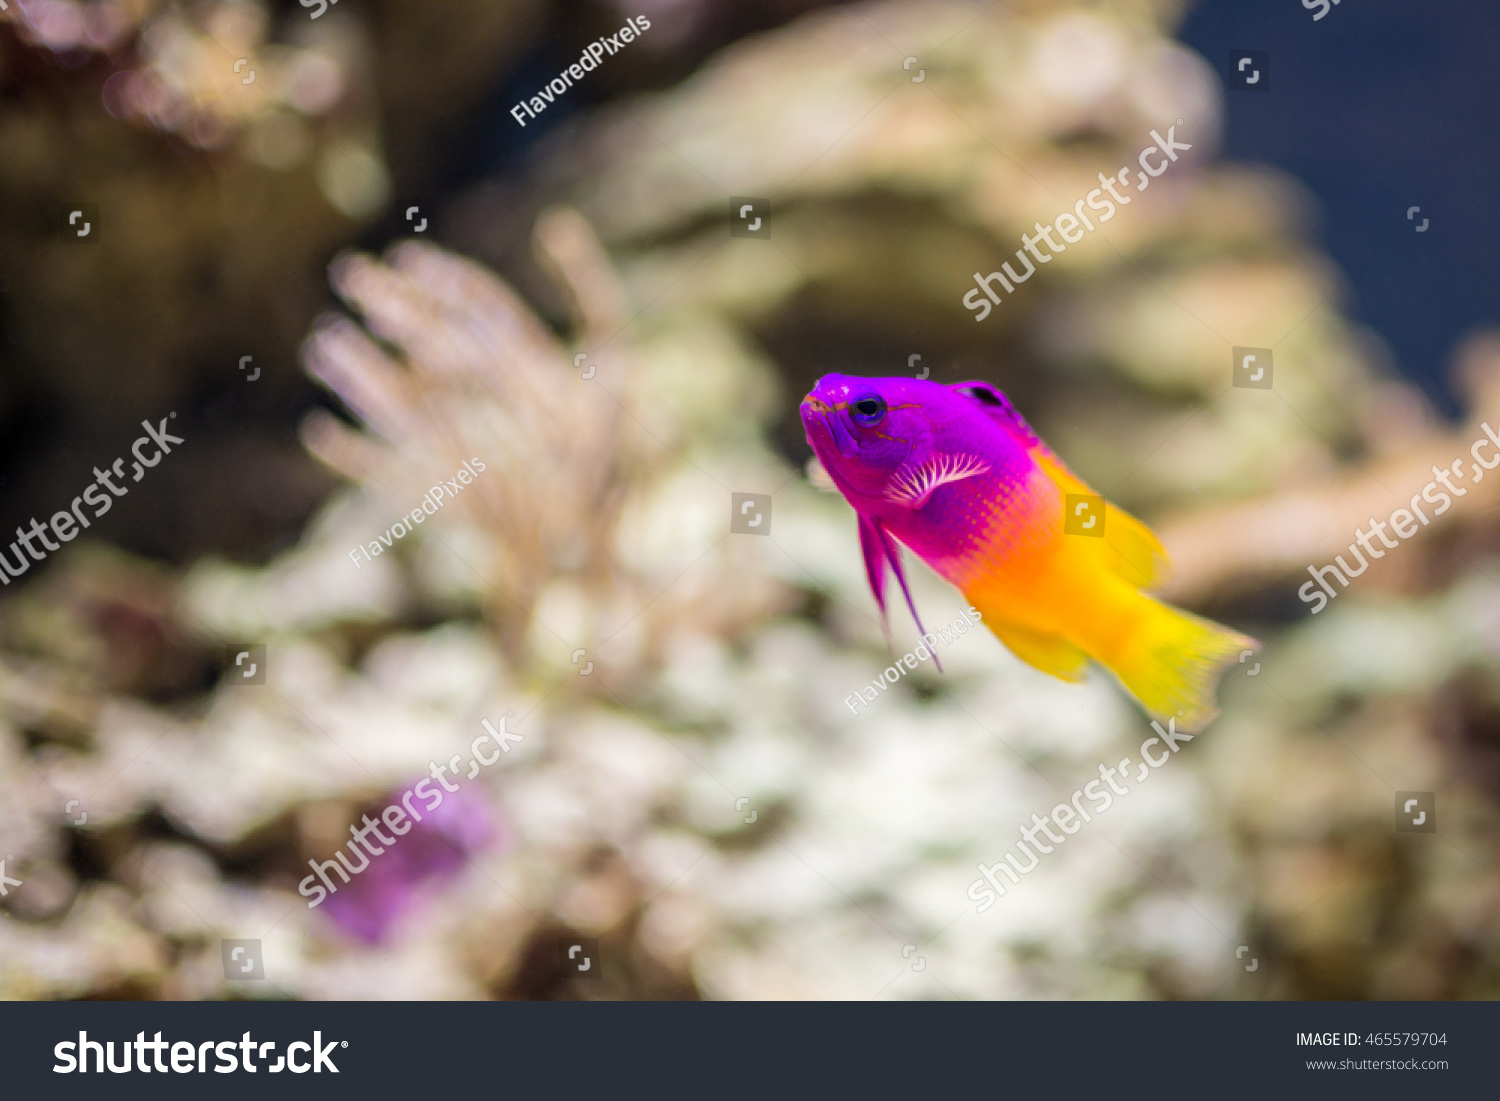 royal tropical fish